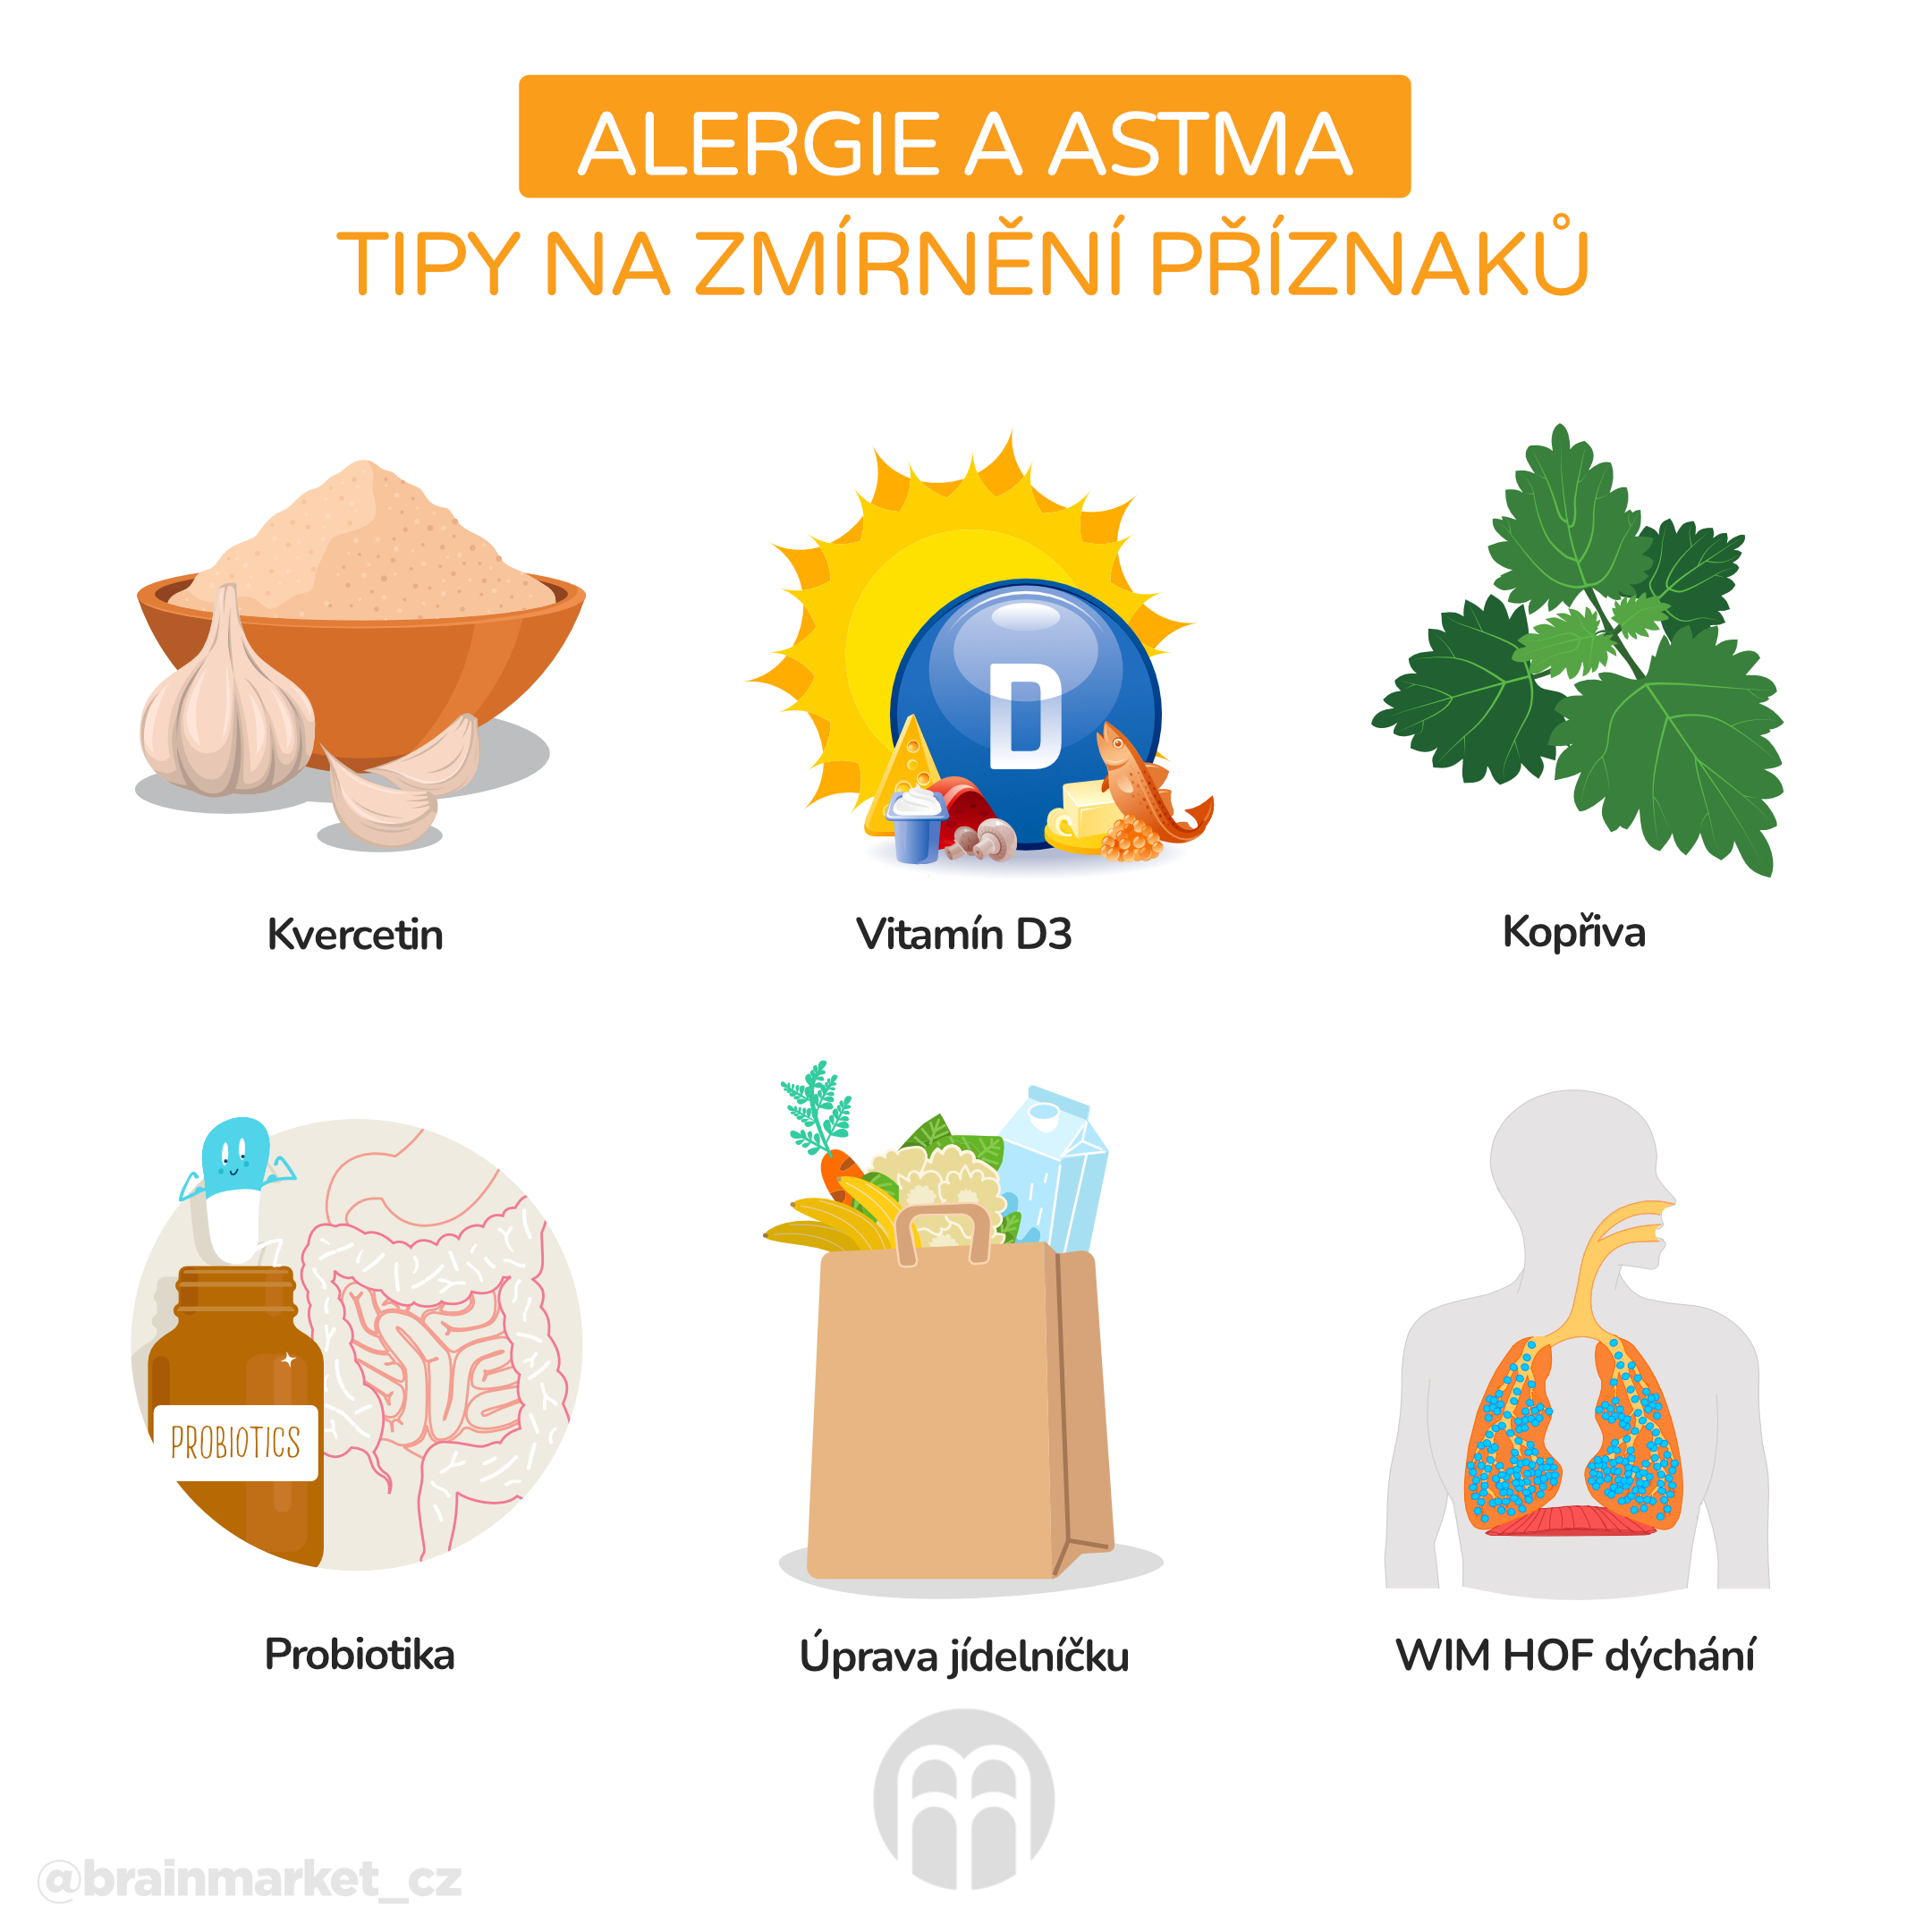 alergie a astma tipy na zmírnění příznaků_infografika_cz